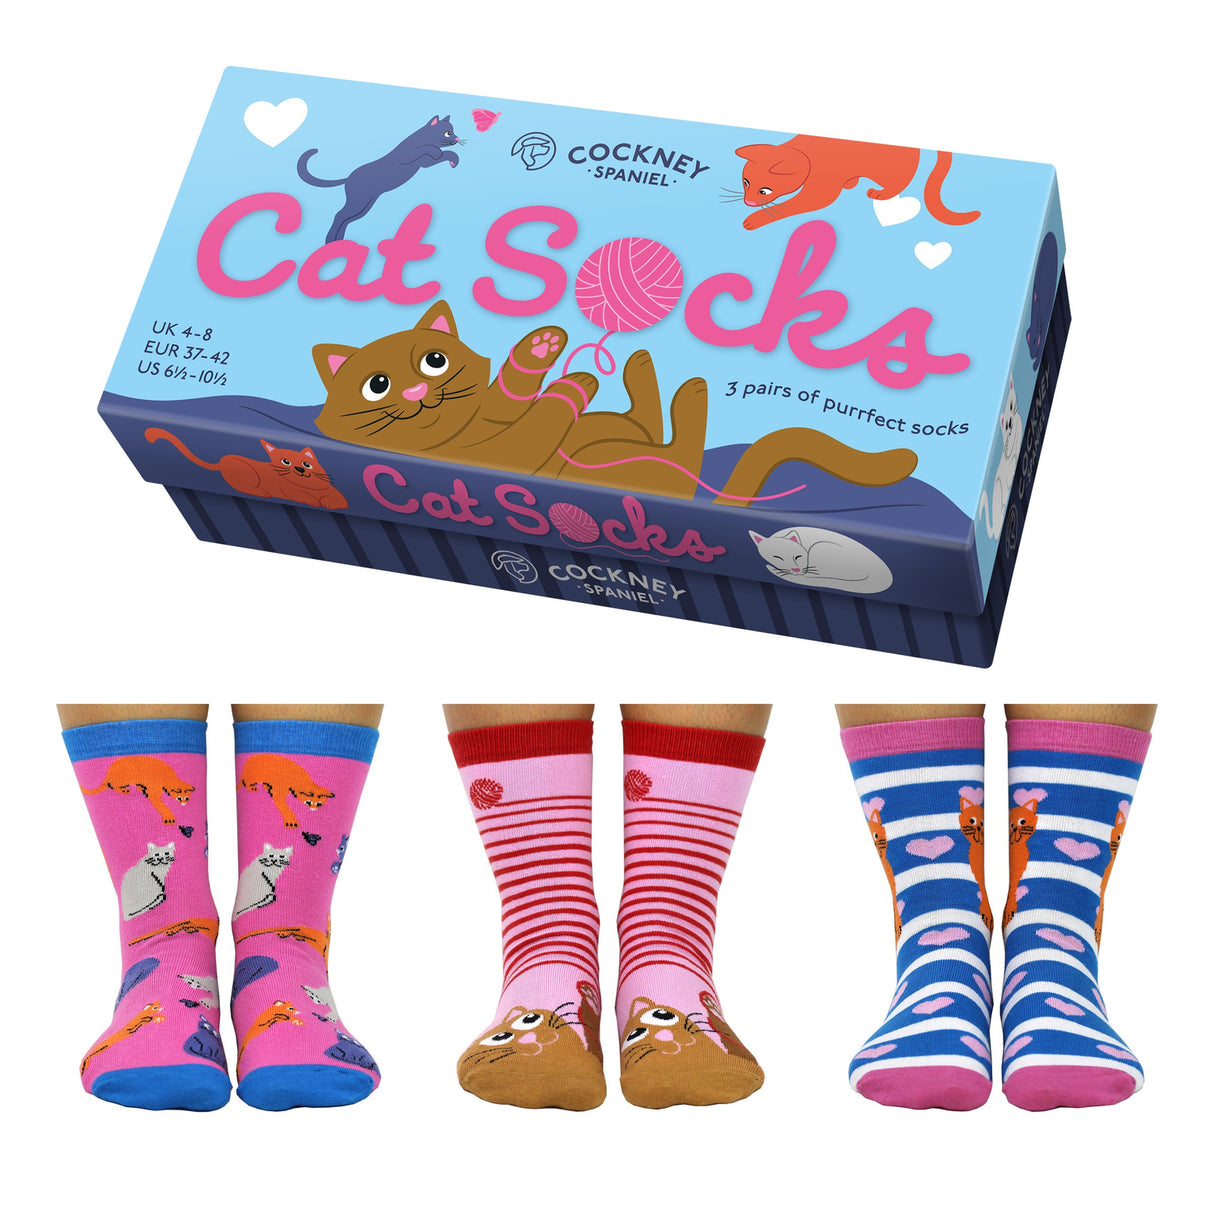 Cat Socks Katzen Socken in 37-42 (3 Paare)